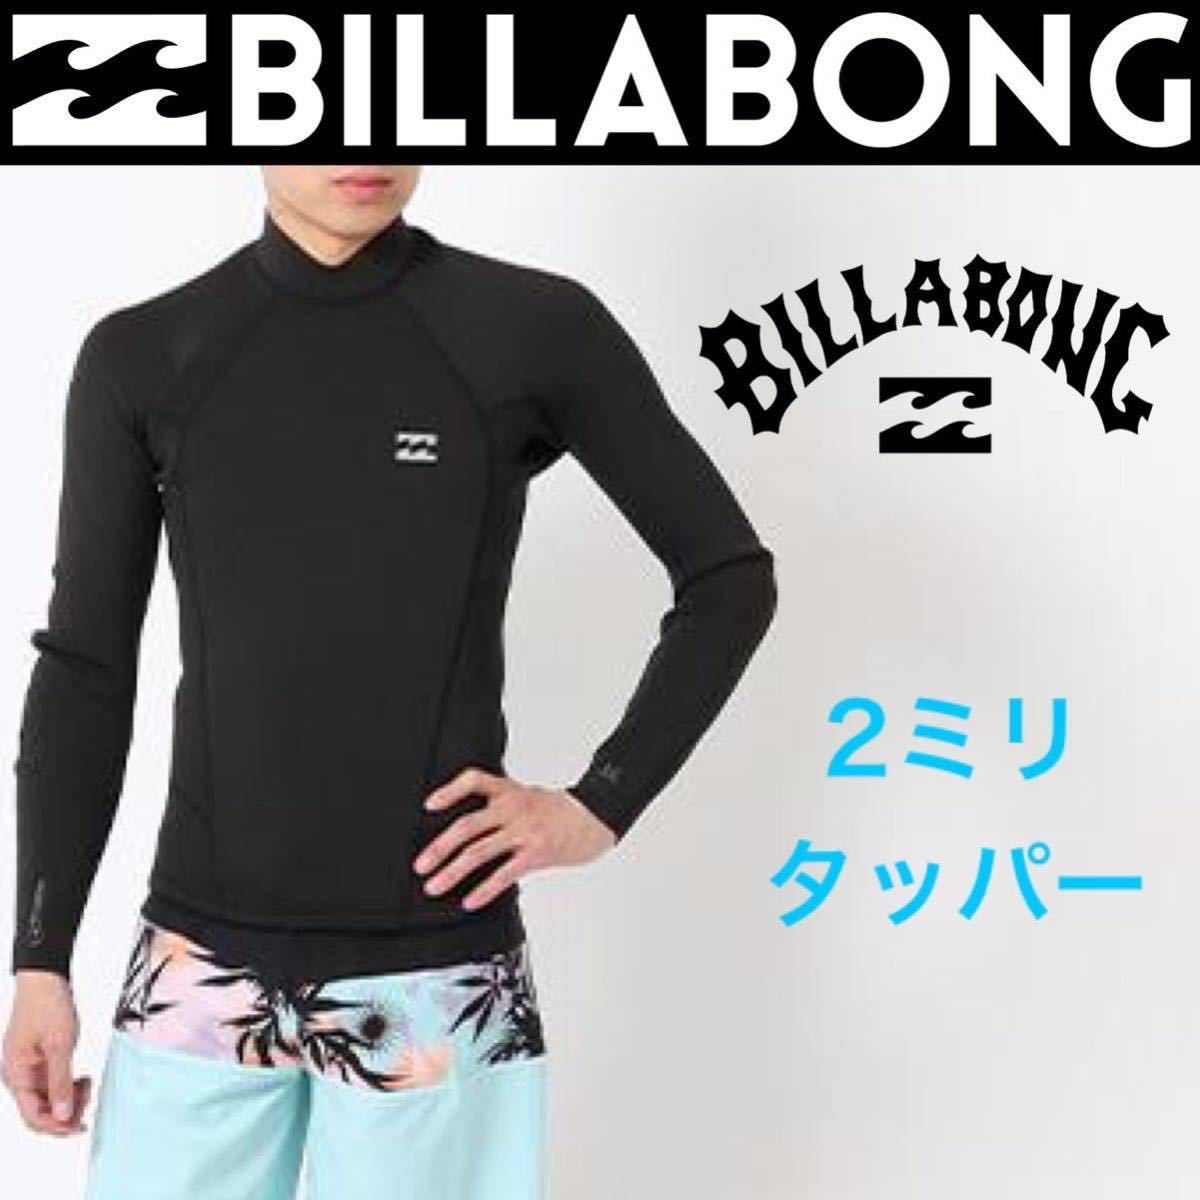 ビラボン メンズ 2ミリ タッパ 長袖タッパー ウエットスーツ ウェットスーツ BILLABONG L